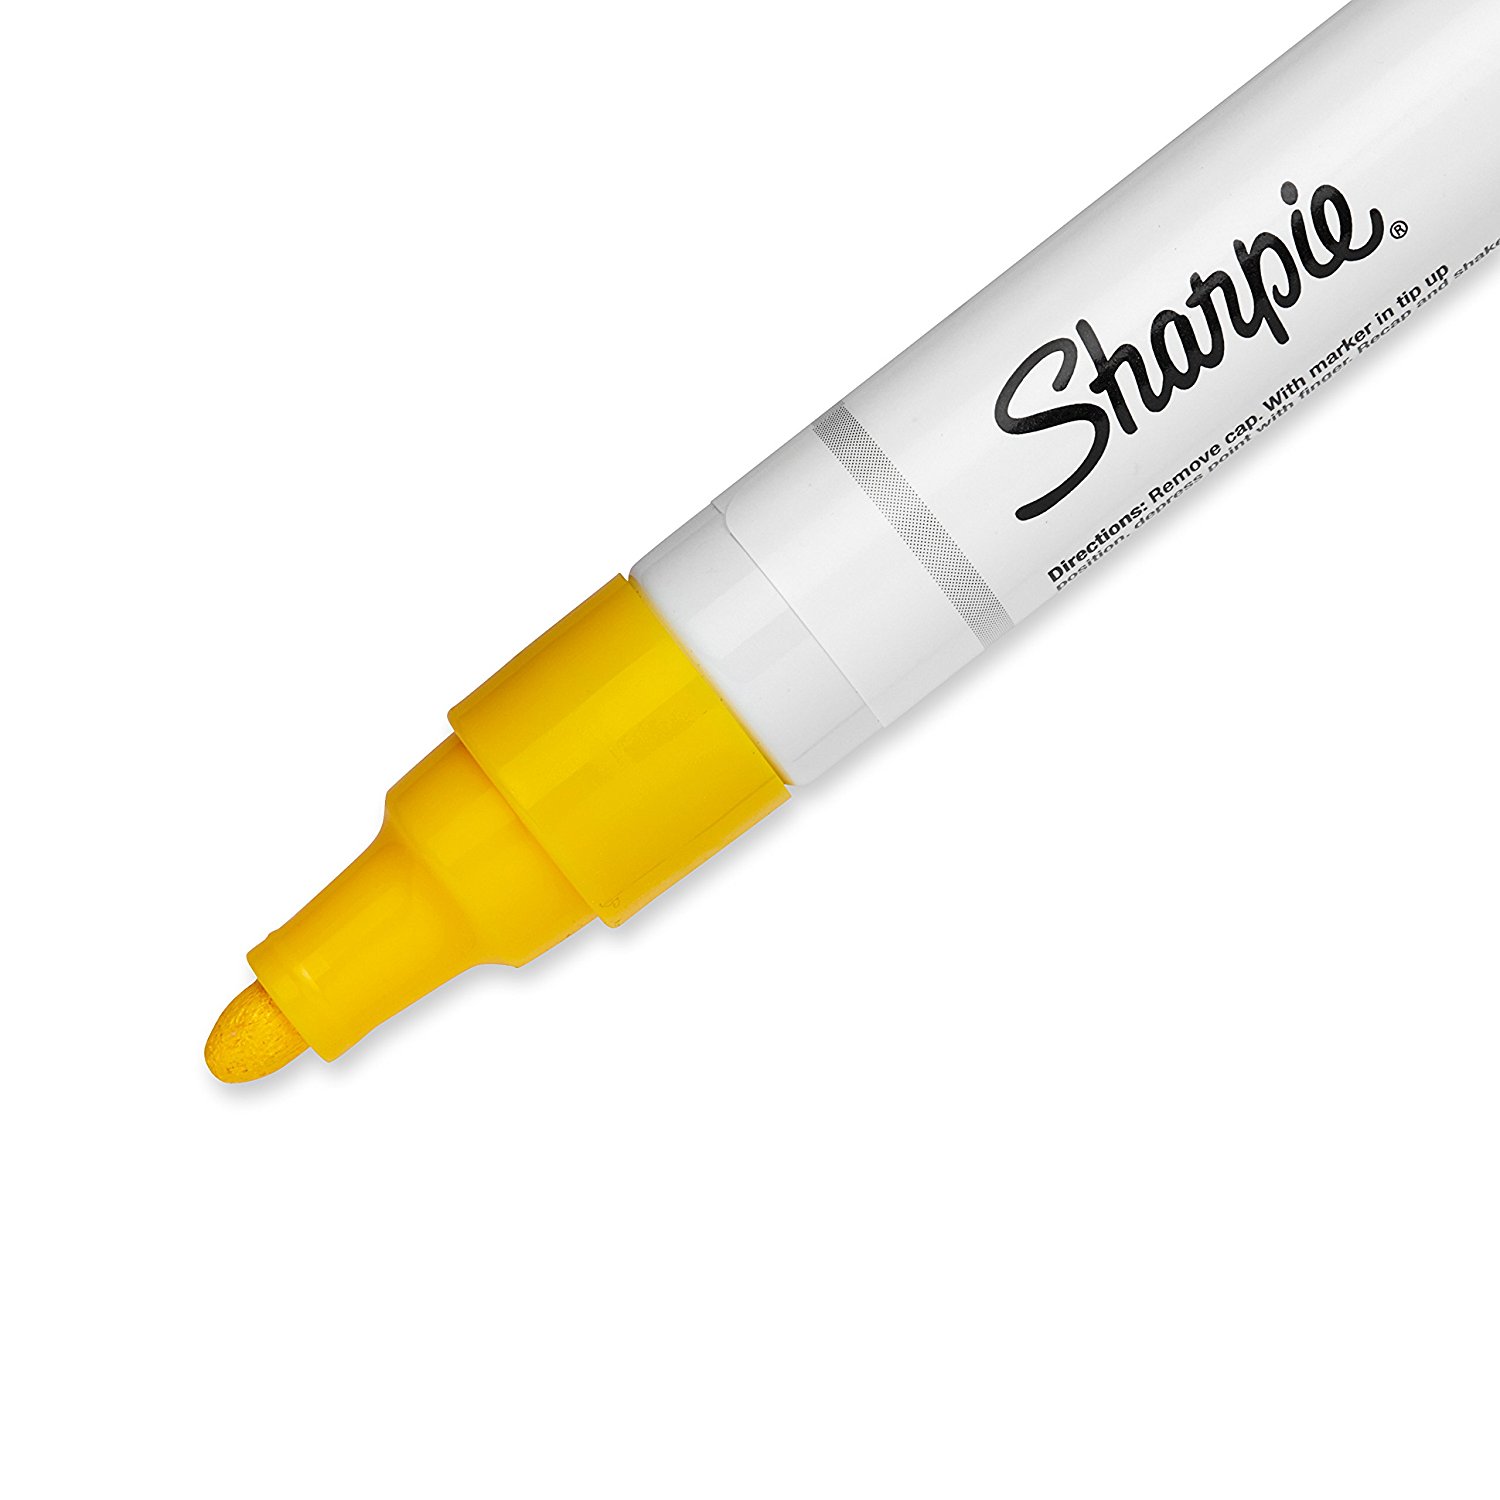 Sharpie Paint Marker, Oil Base, Medium Point, Yellow: Amazon.co.uk ...